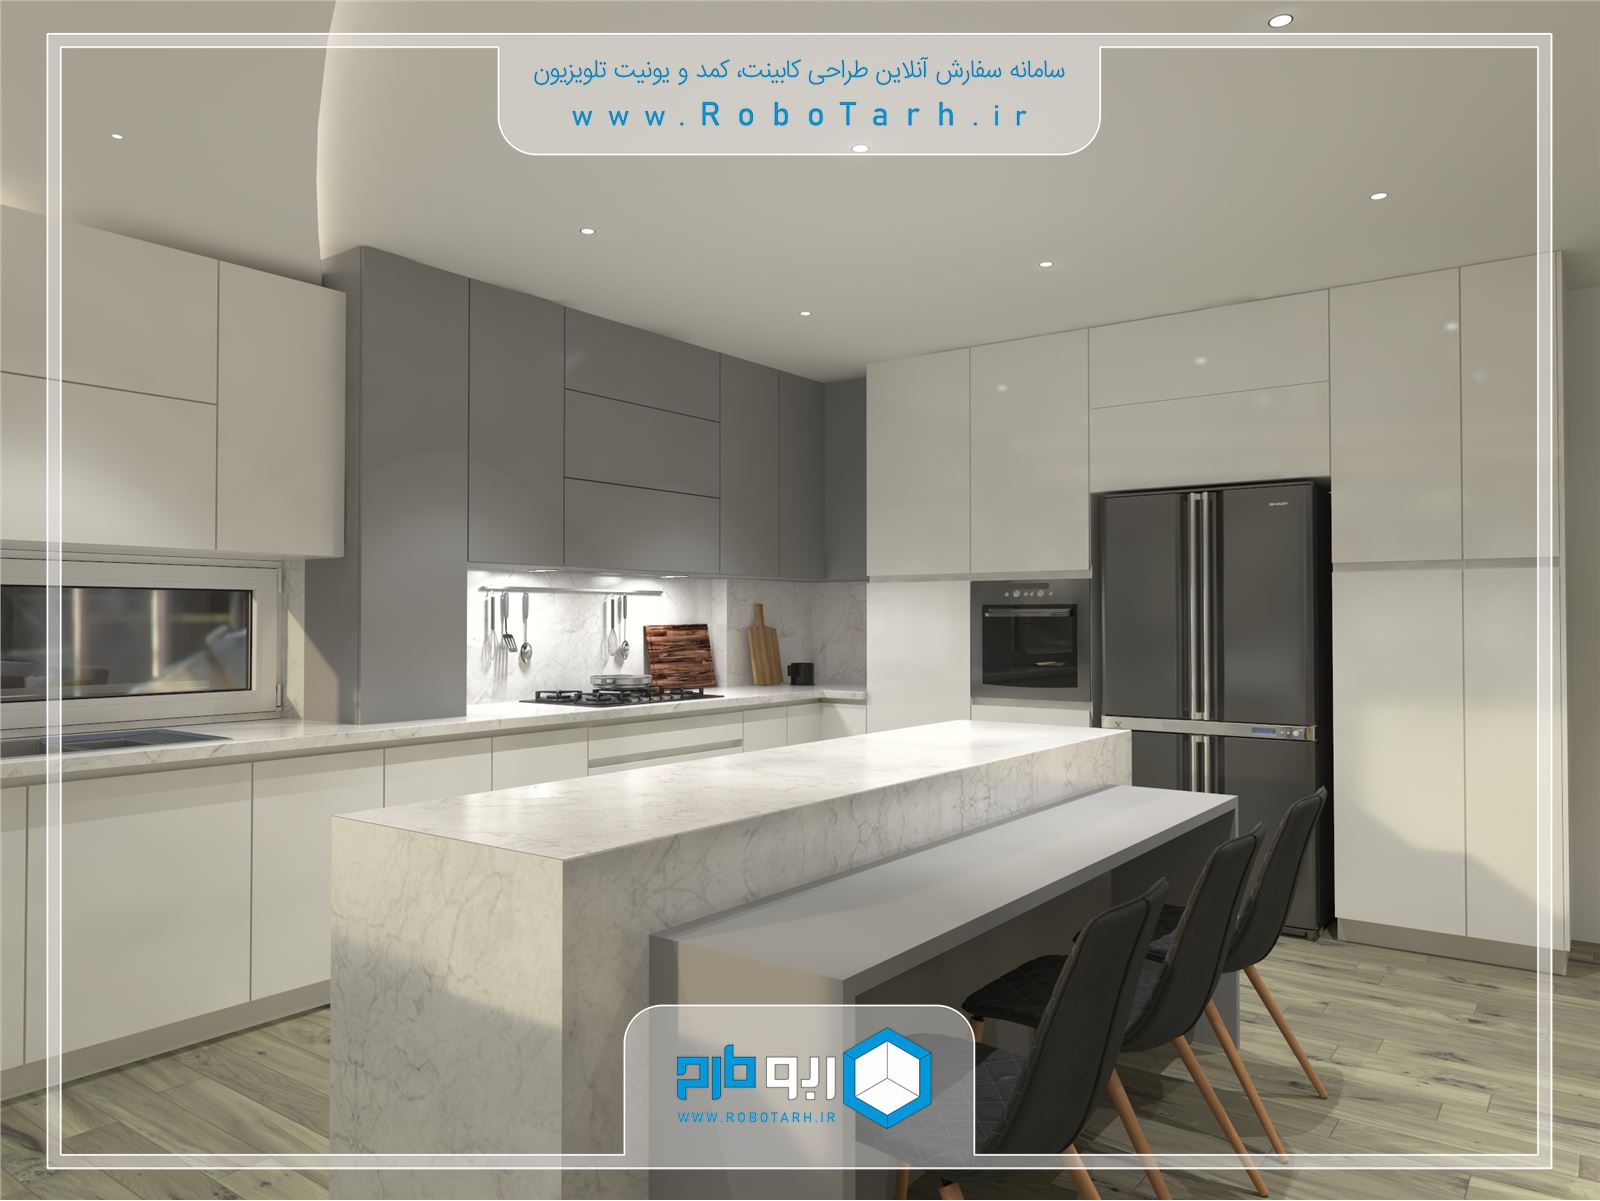 طراحی کابینت آشپزخانه مدرن خاکستری و سفید رنگ ساده و جذاب - ربوطرح